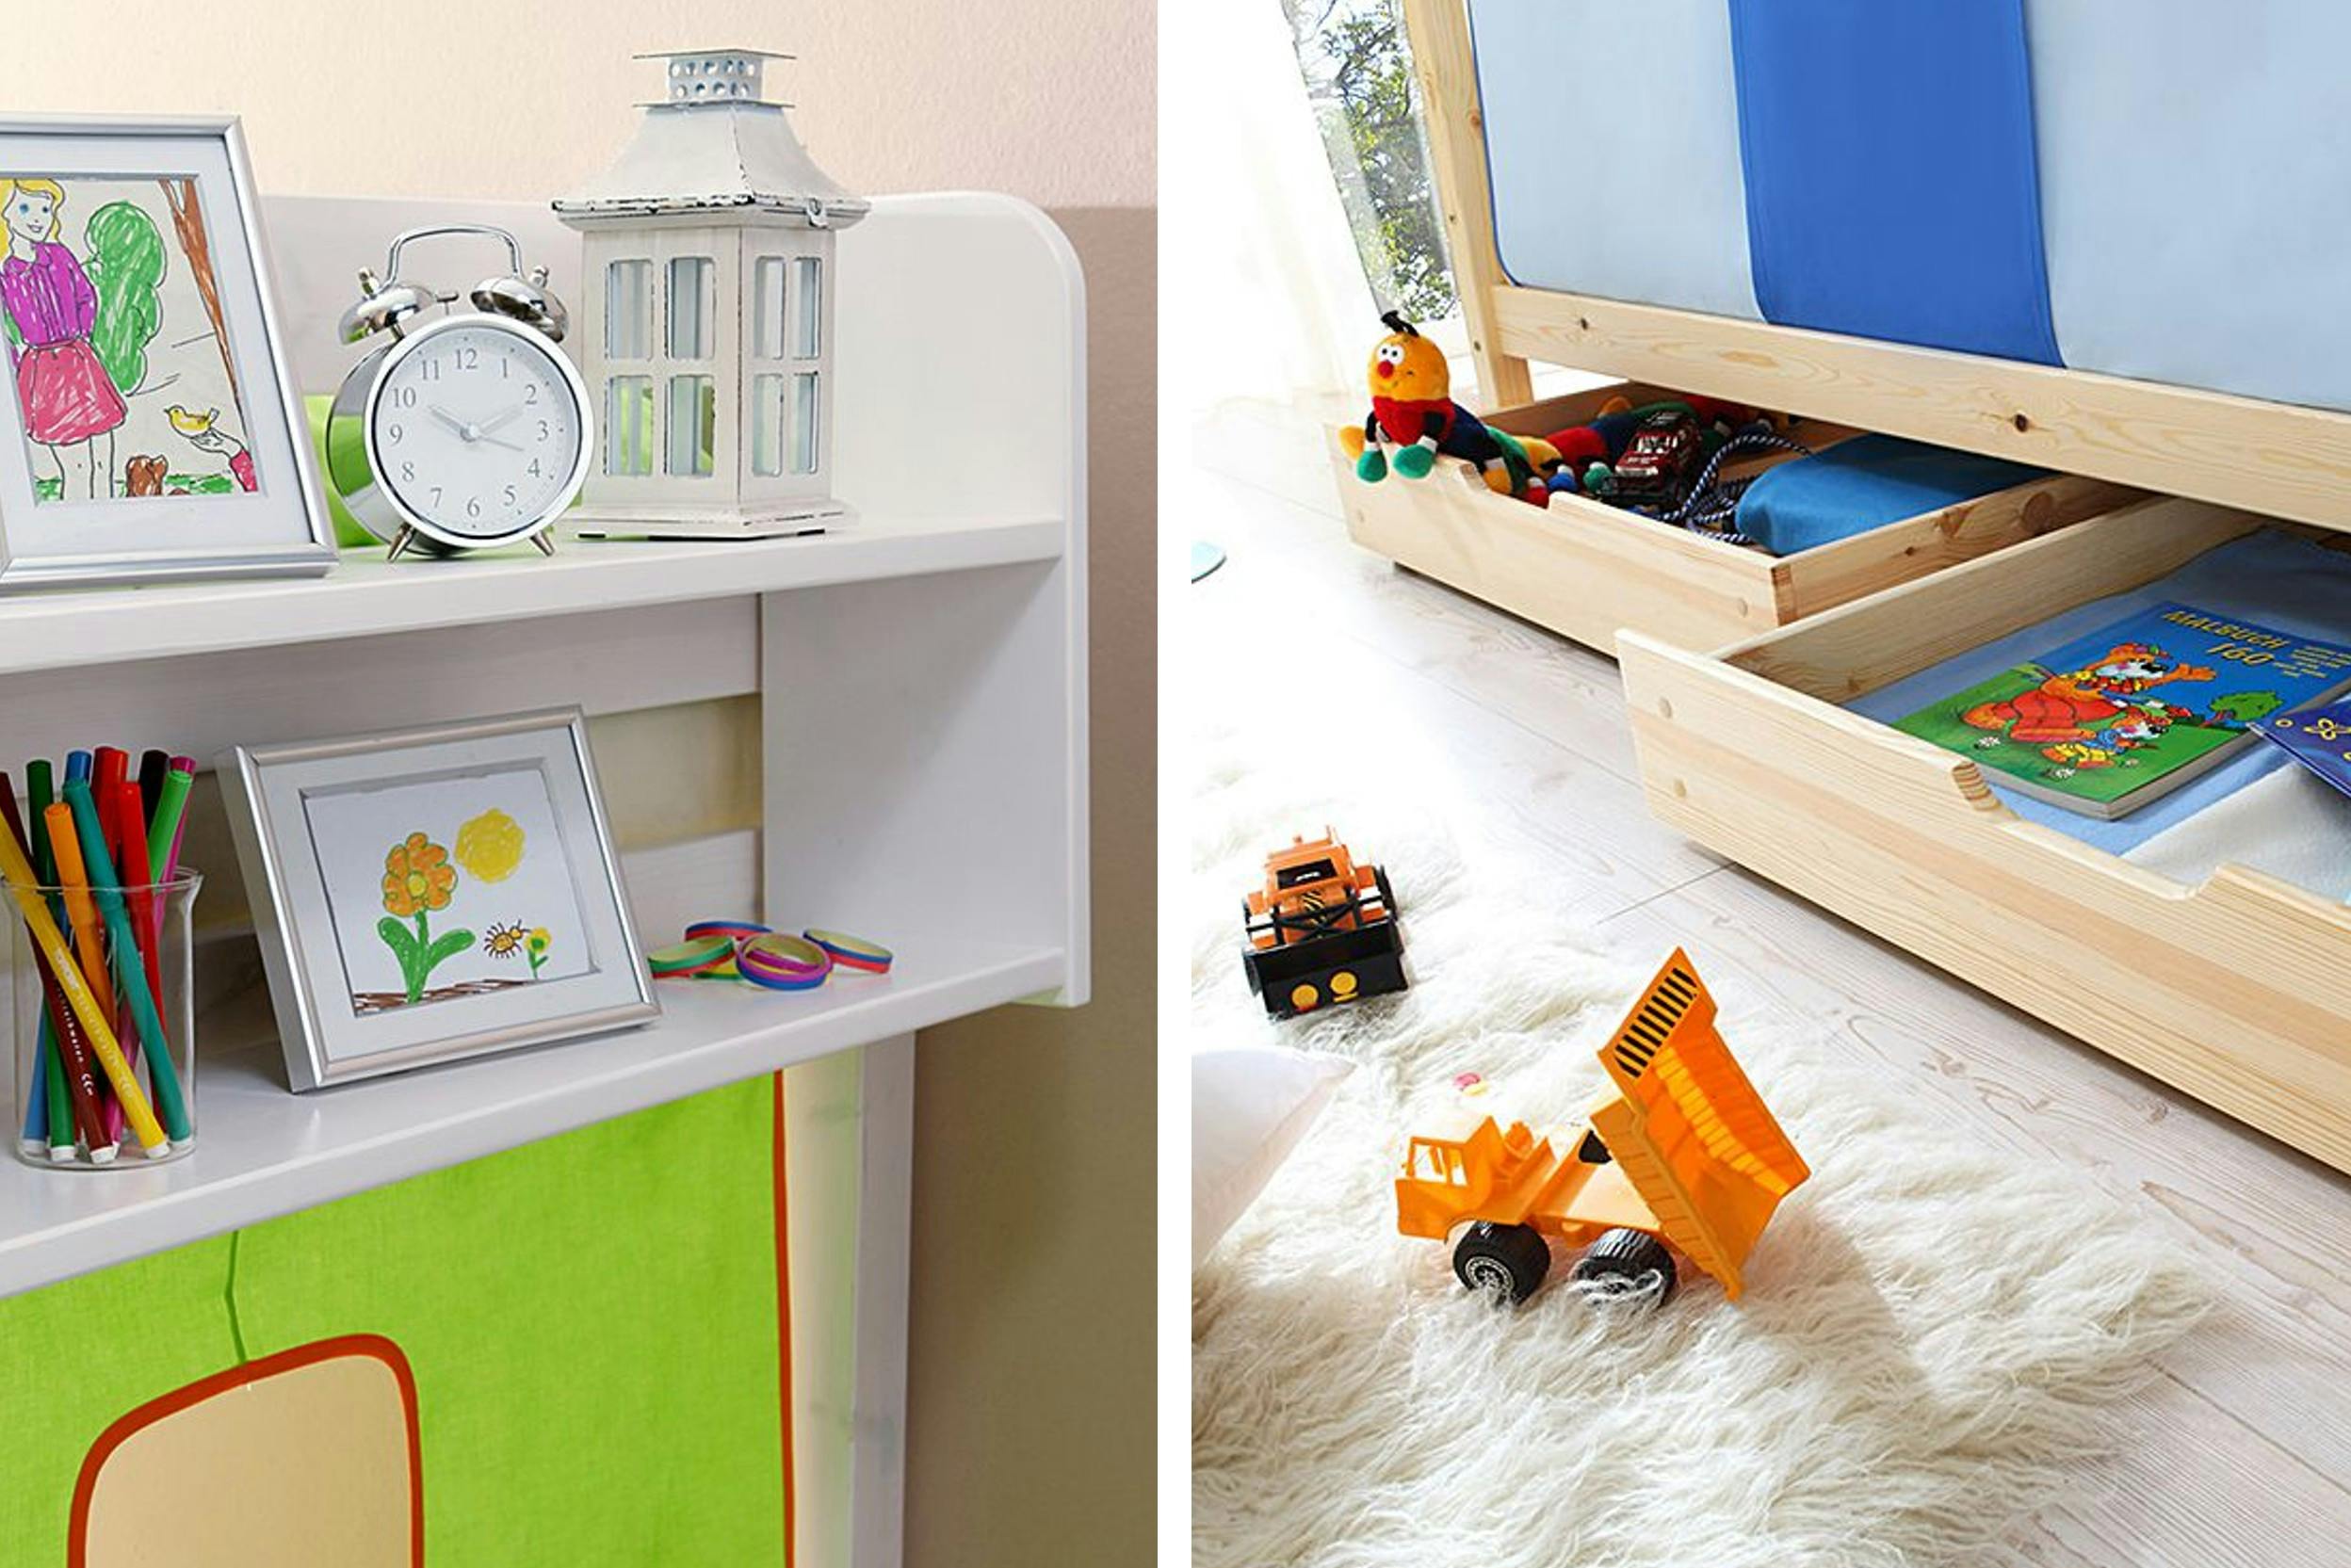 Plankje aan hoogslaper met tekening, wekker en stiften. Laden onder het bed met speelgoed en boeken.